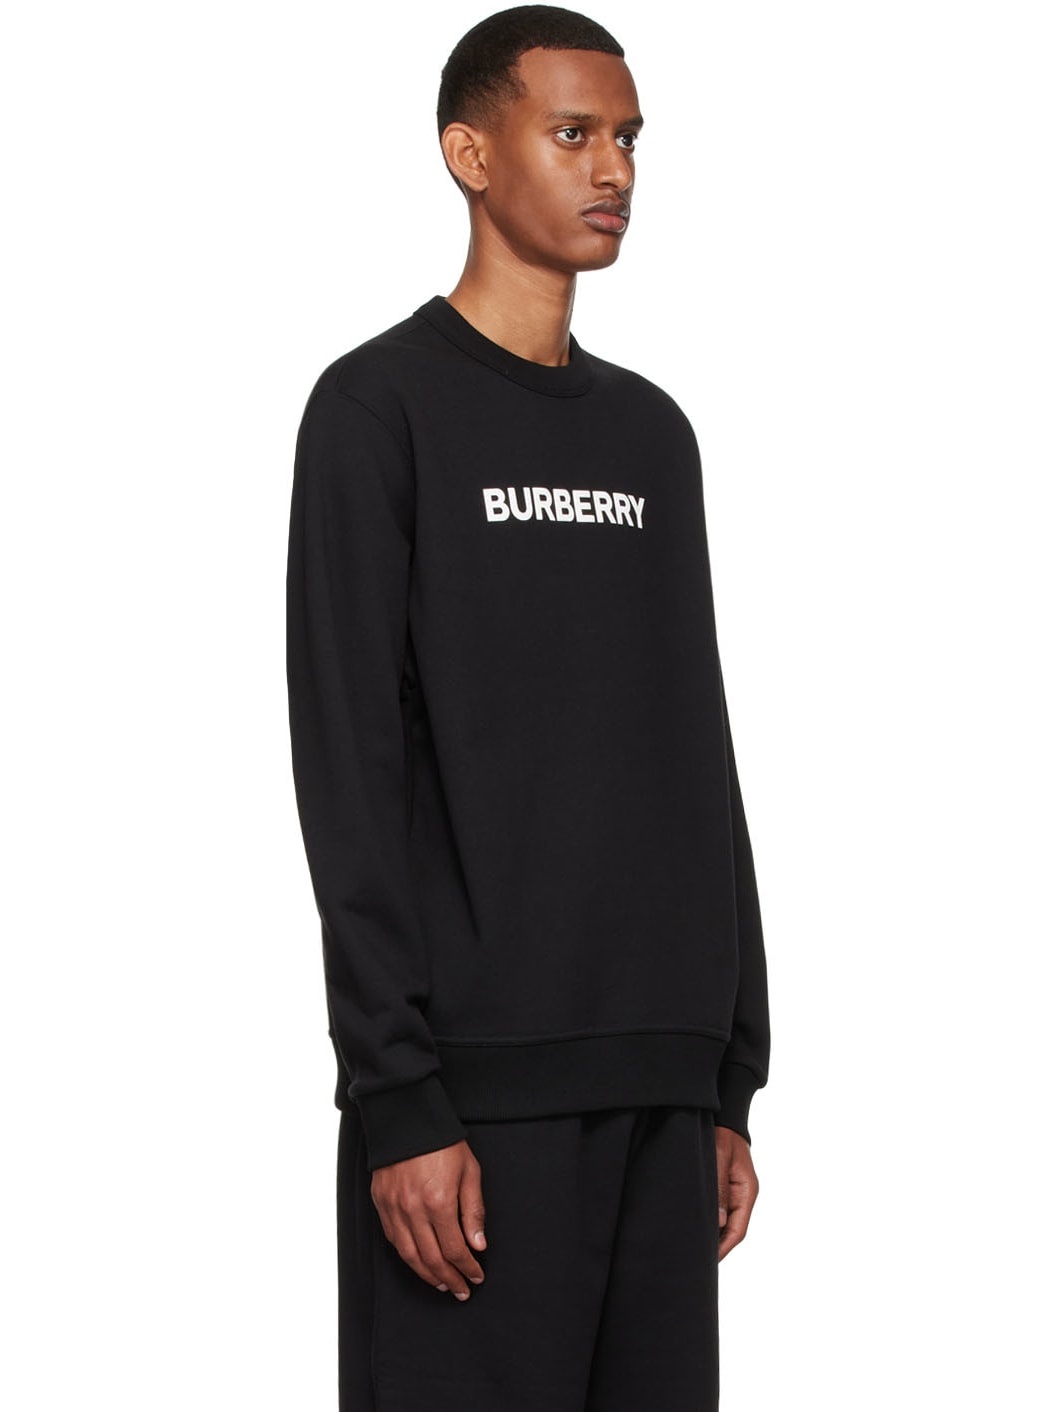 Black Burlow Sweatshirt - 2